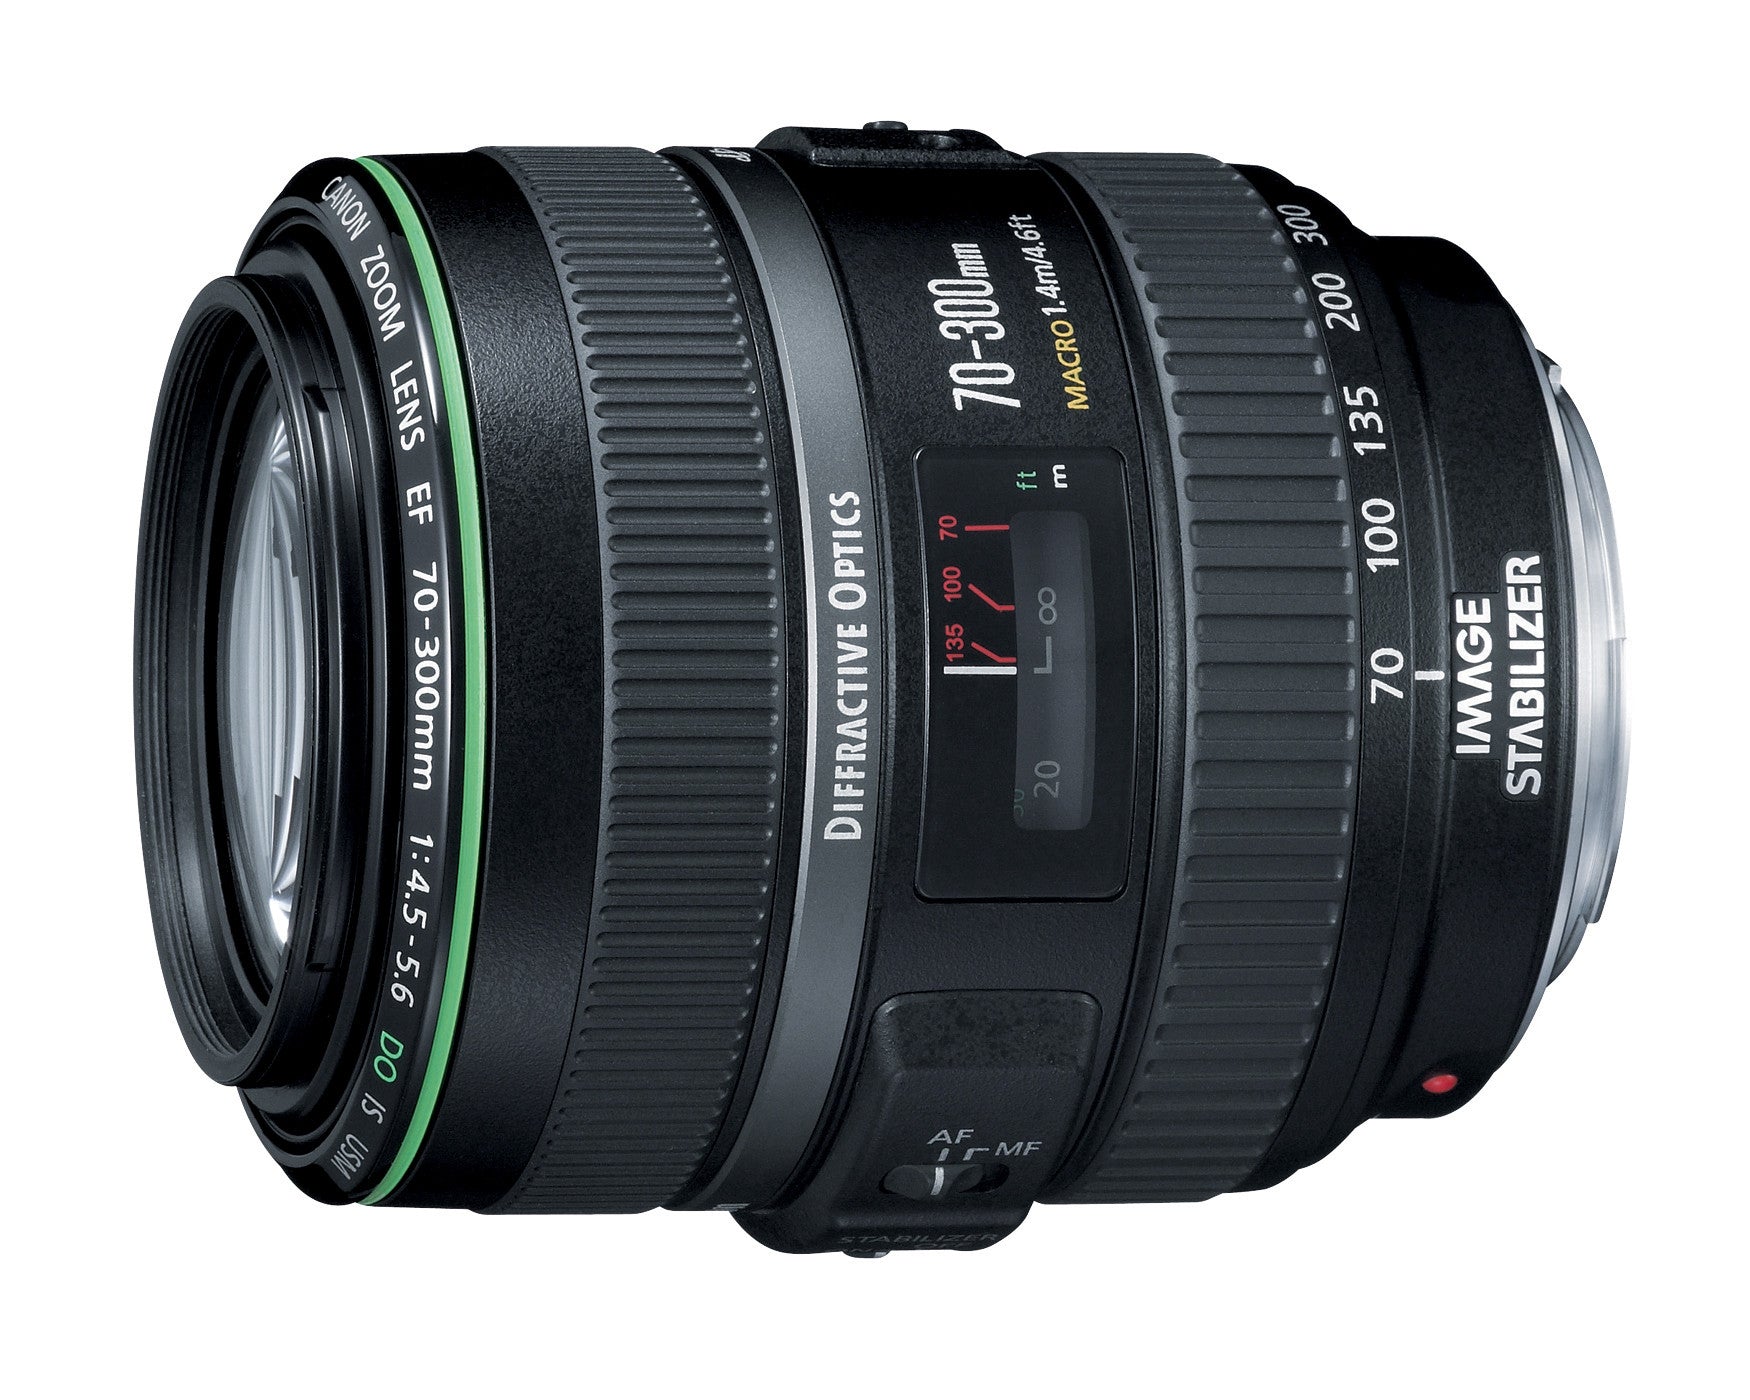 Canon EF 70-300mm f4.5-5.6 DO IS USM Lens, lenses slr lenses, Canon - Pictureline  - 3